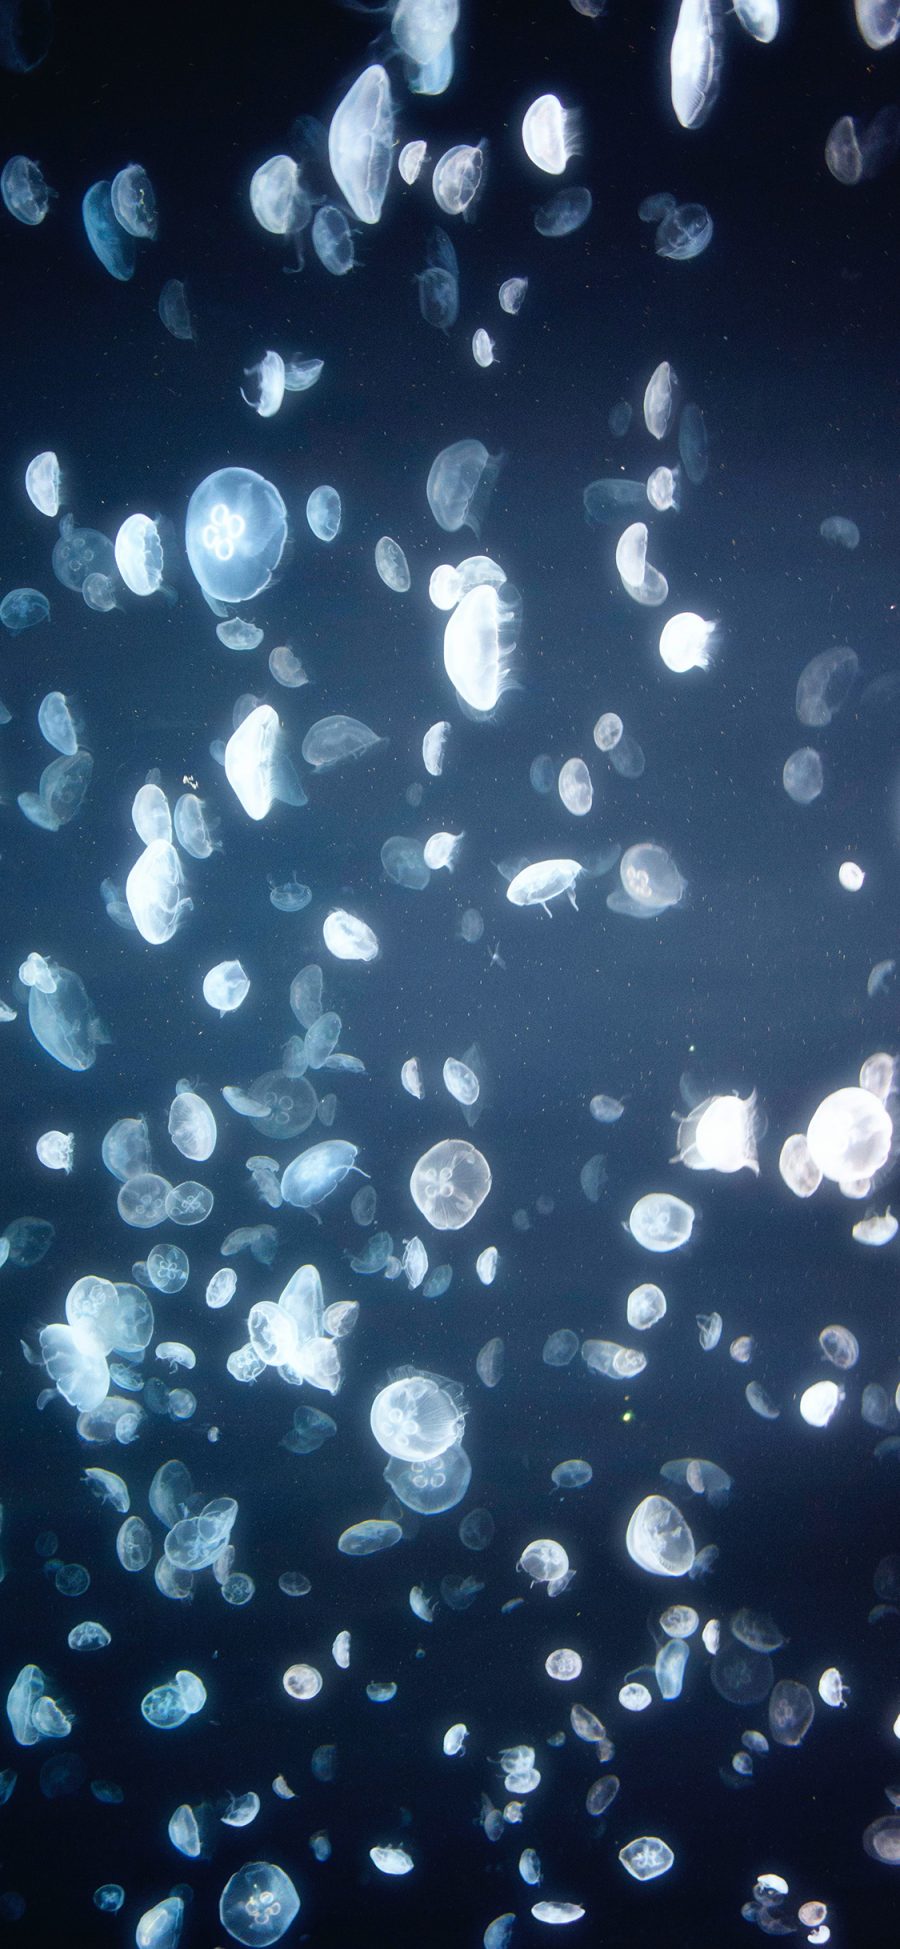 [2436×1125]水母 密集 养殖 浮游 苹果手机壁纸图片